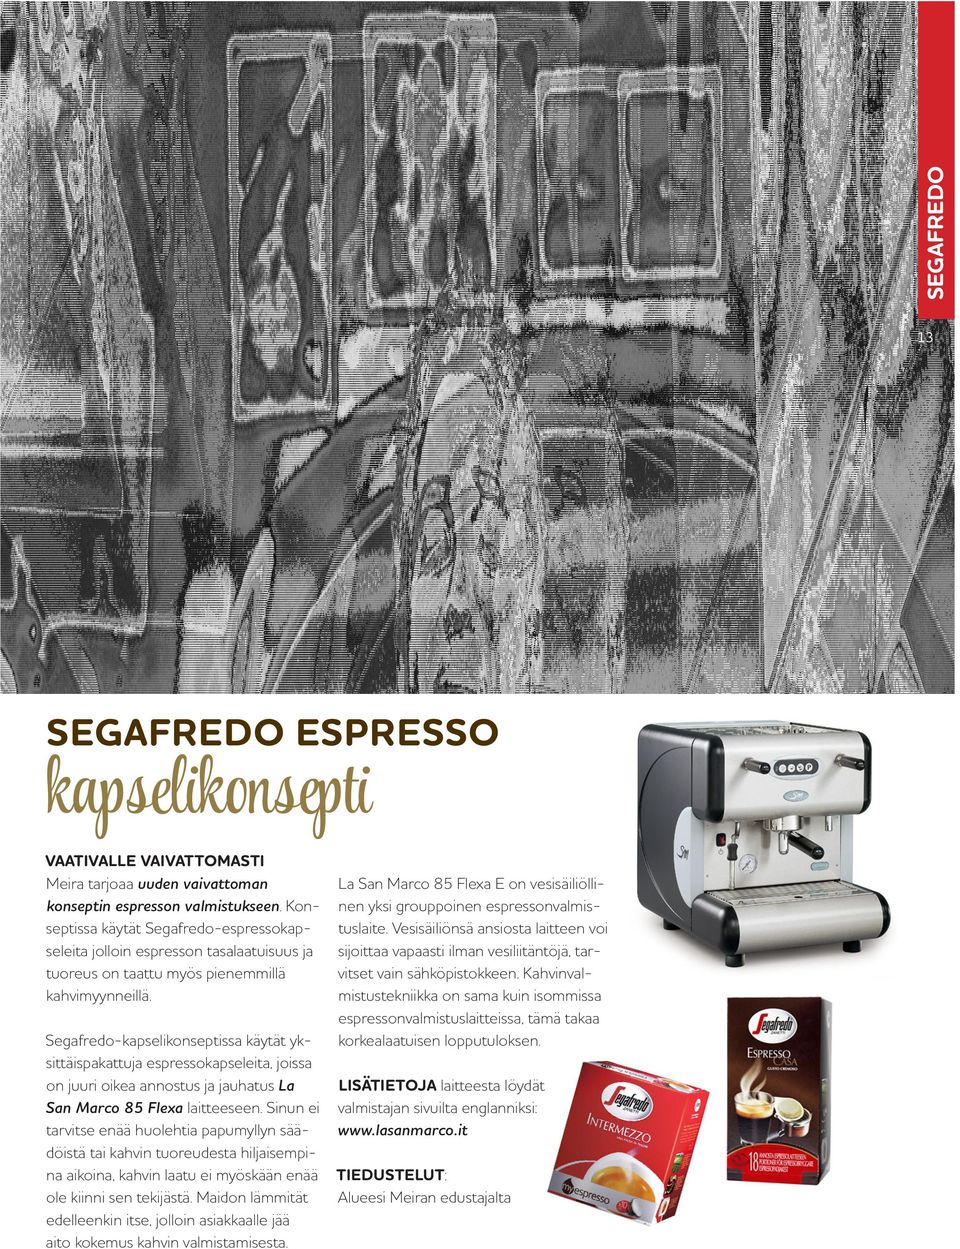 Segafredo-kapselikonseptissa käytät yksittäispakattuja espressokapseleita, joissa on juuri oikea annostus ja jauhatus La San Marco 85 Flexa laitteeseen.